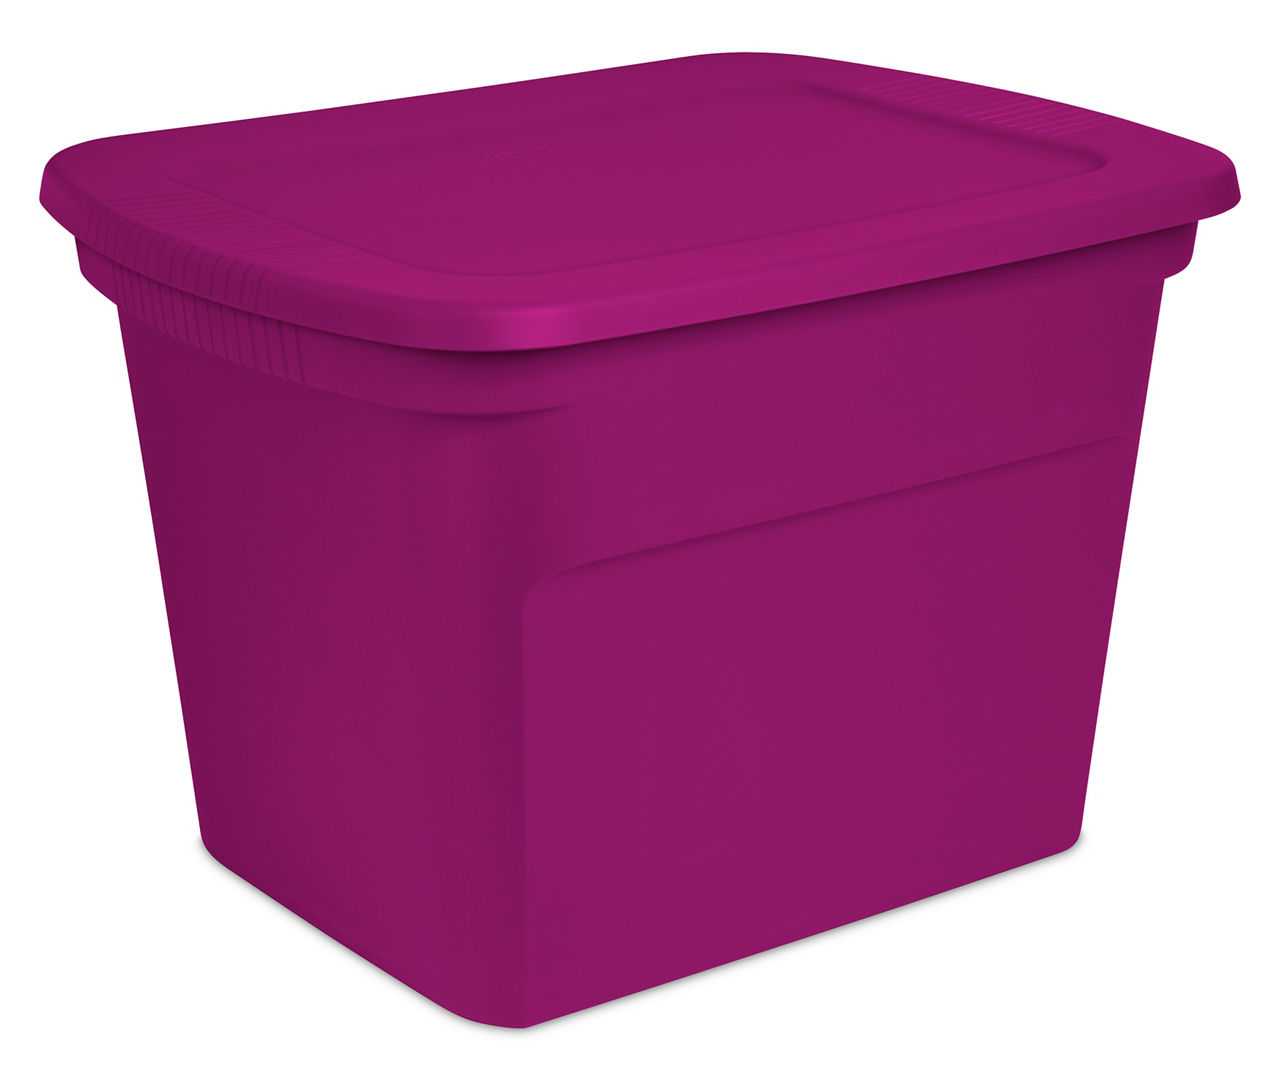 Sterilite 18 Gallon Tote Box Plastic, Violet Magenta 